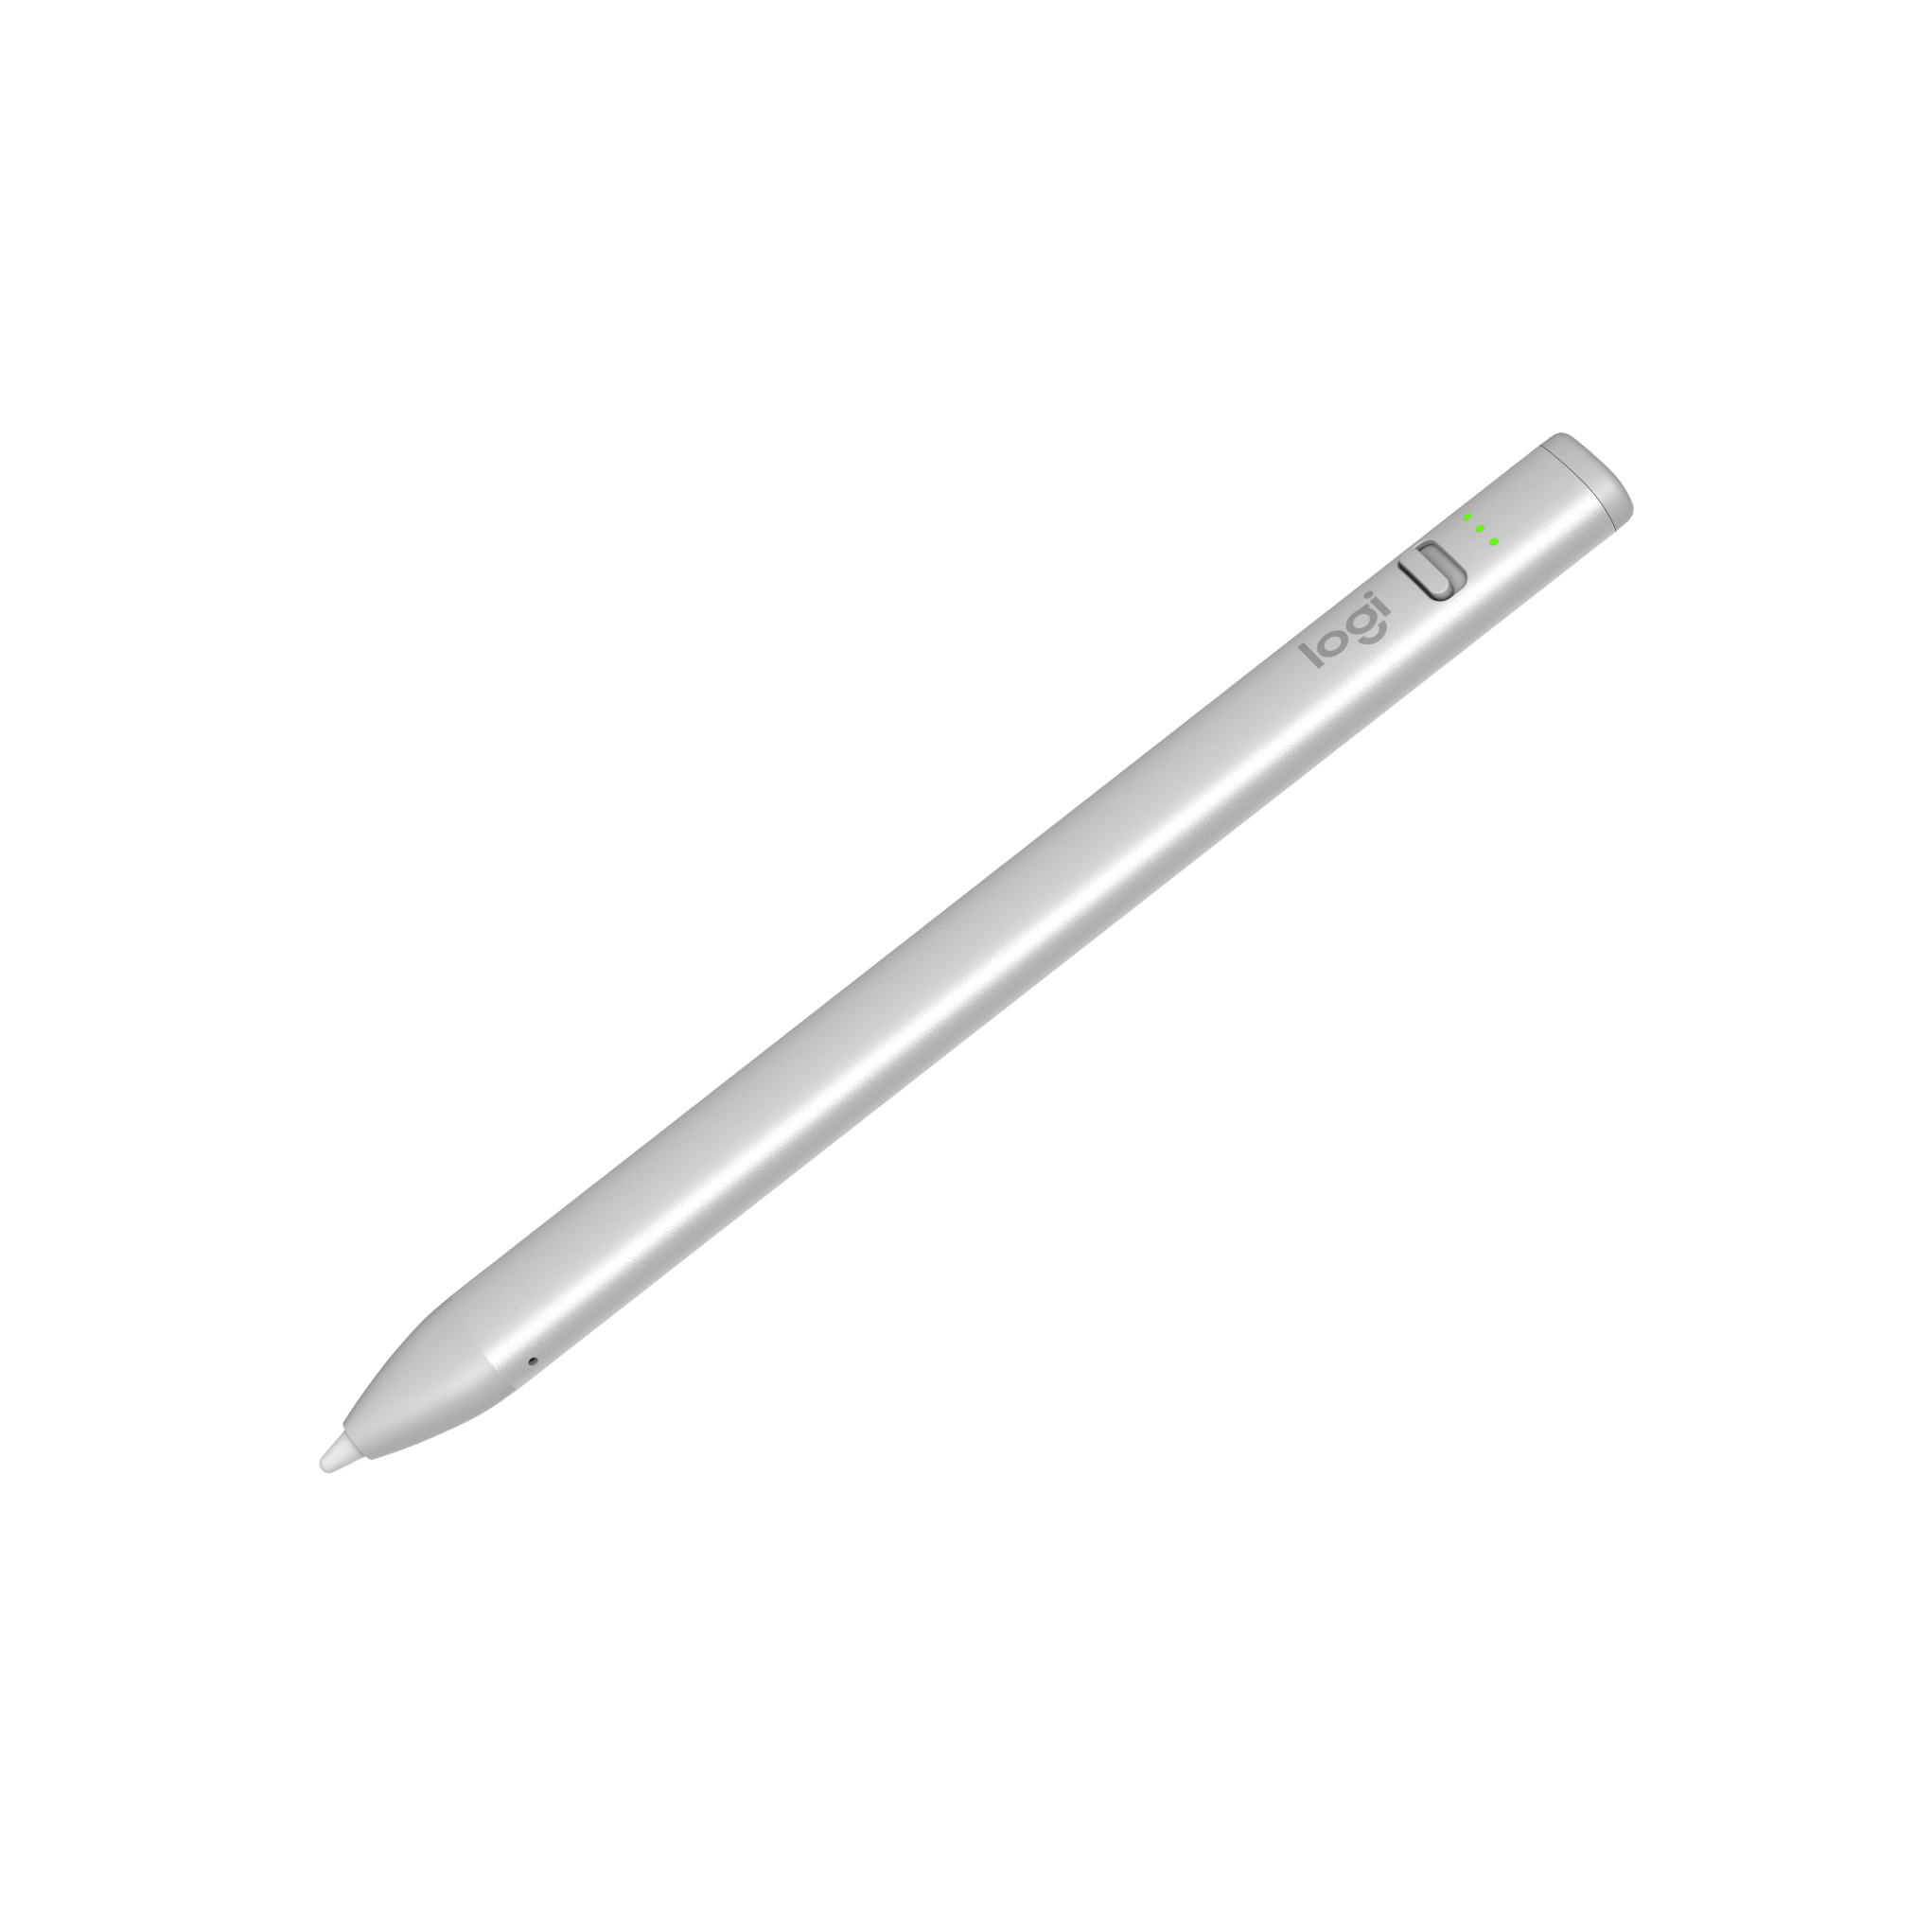 Bút cảm ứng Logitech Crayon dành cho iPad - Công nghệ kỹ thuật số như Apple Pencil, không độ trễ, sạc nhanh USB C - Hàng chính hãng